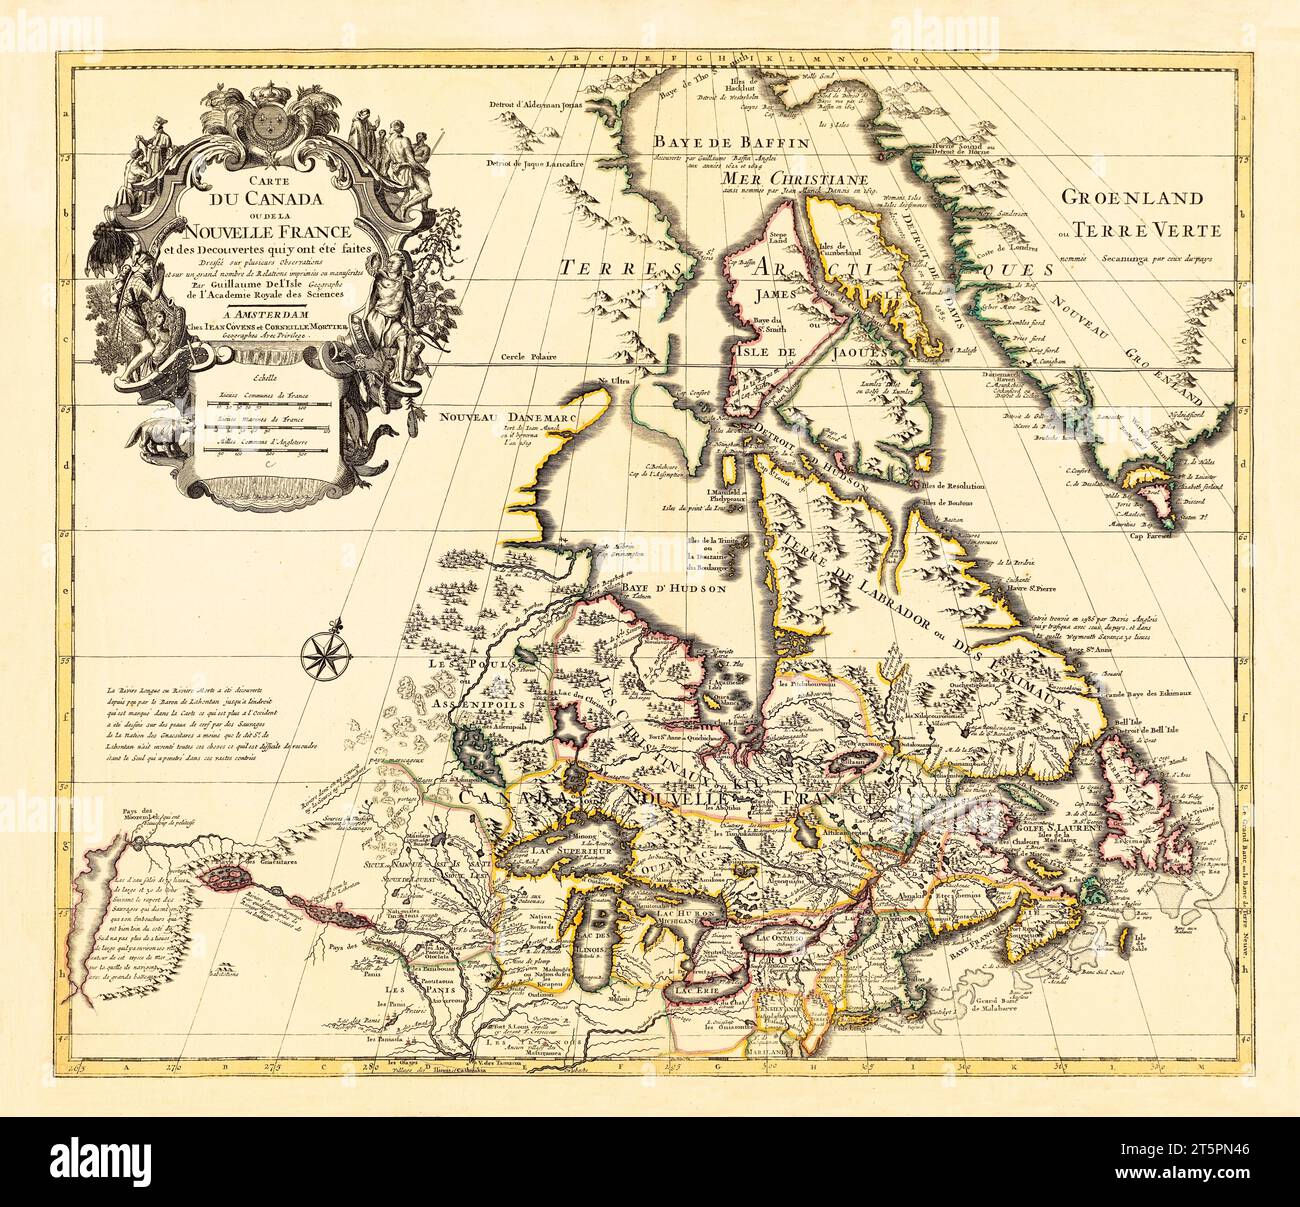 Ancienne carte du Canada (Nouvelle-France). Par l'Isle, publ. env. 1730 Banque D'Images